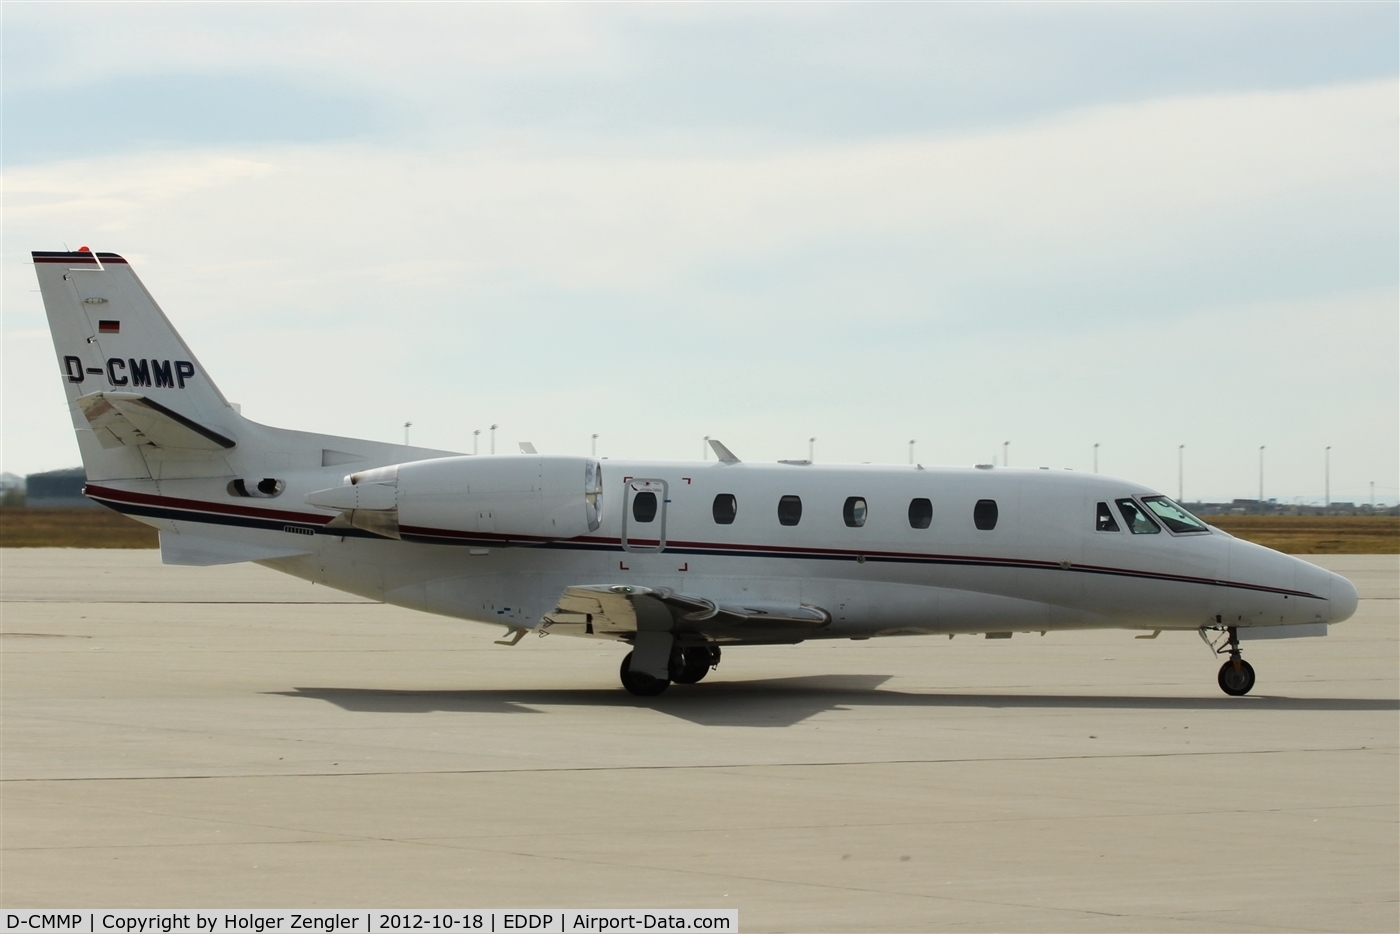 D-CMMP, 2007 Cessna 560 Citation Excel XLS C/N 560-5719, Arrival on apron 1 east...